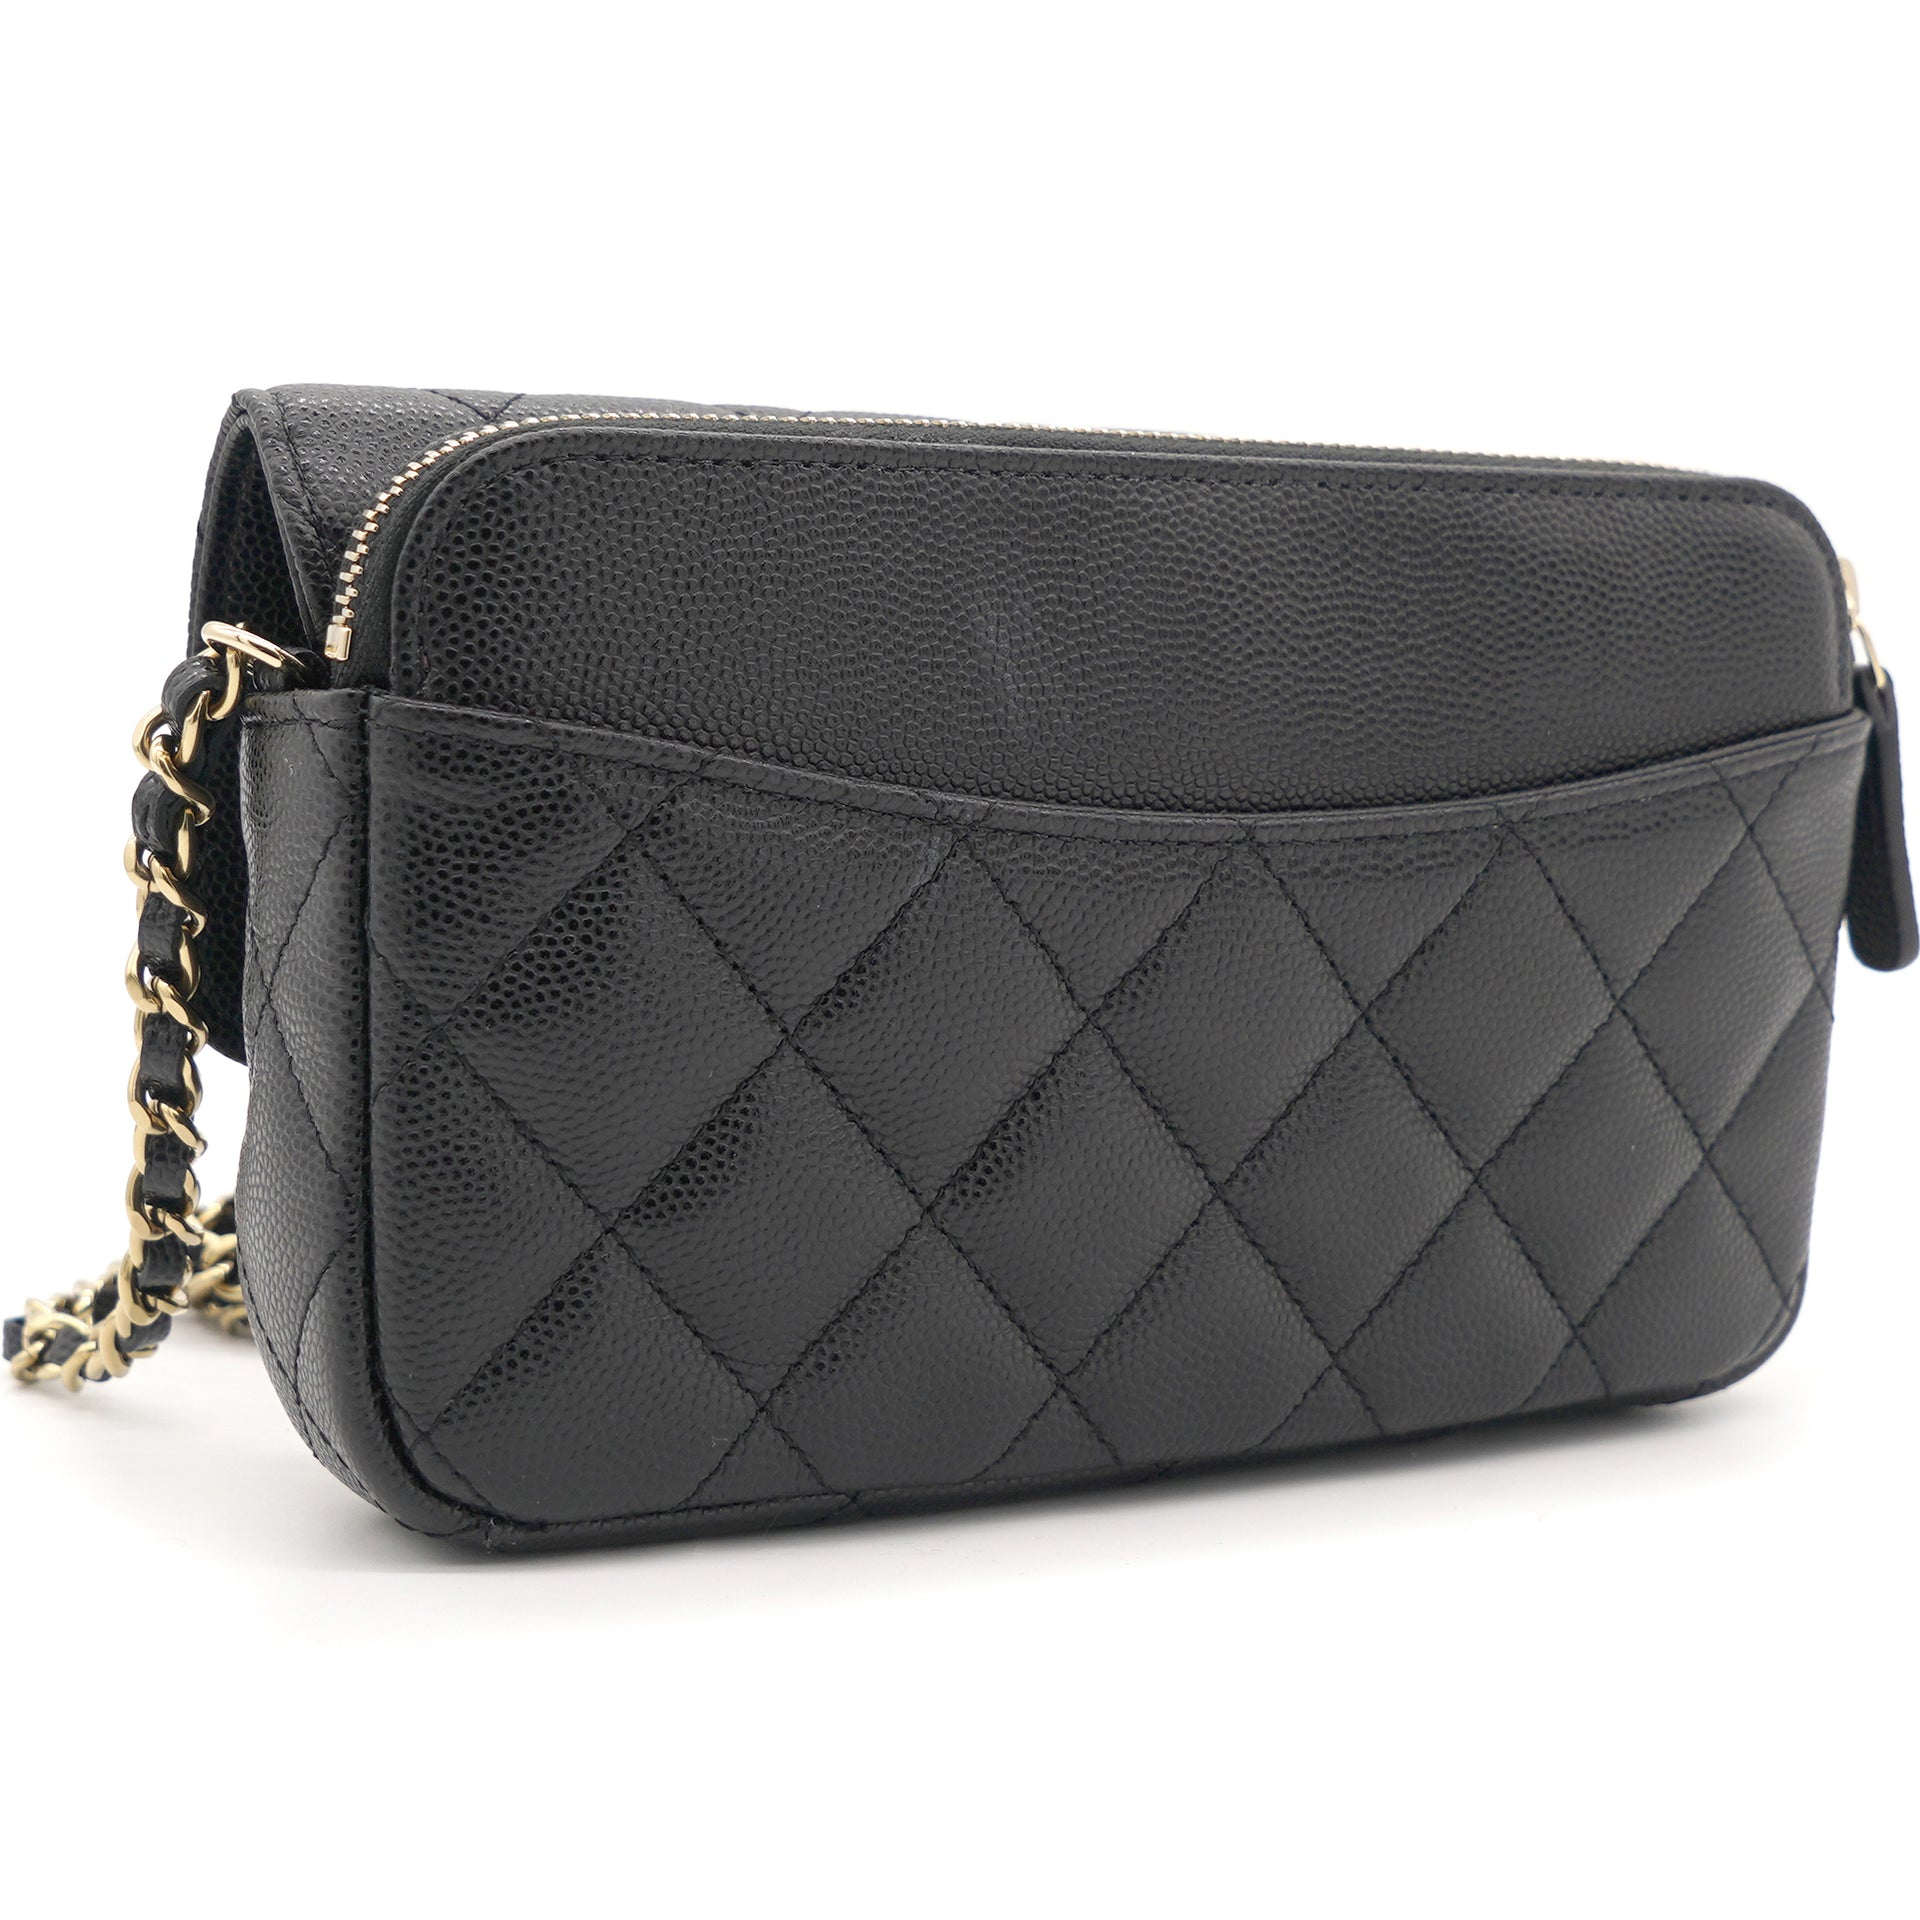 Chanel Matte Caviar Leather Coco Tassel Mini Camera Bag, Chanel Handbags